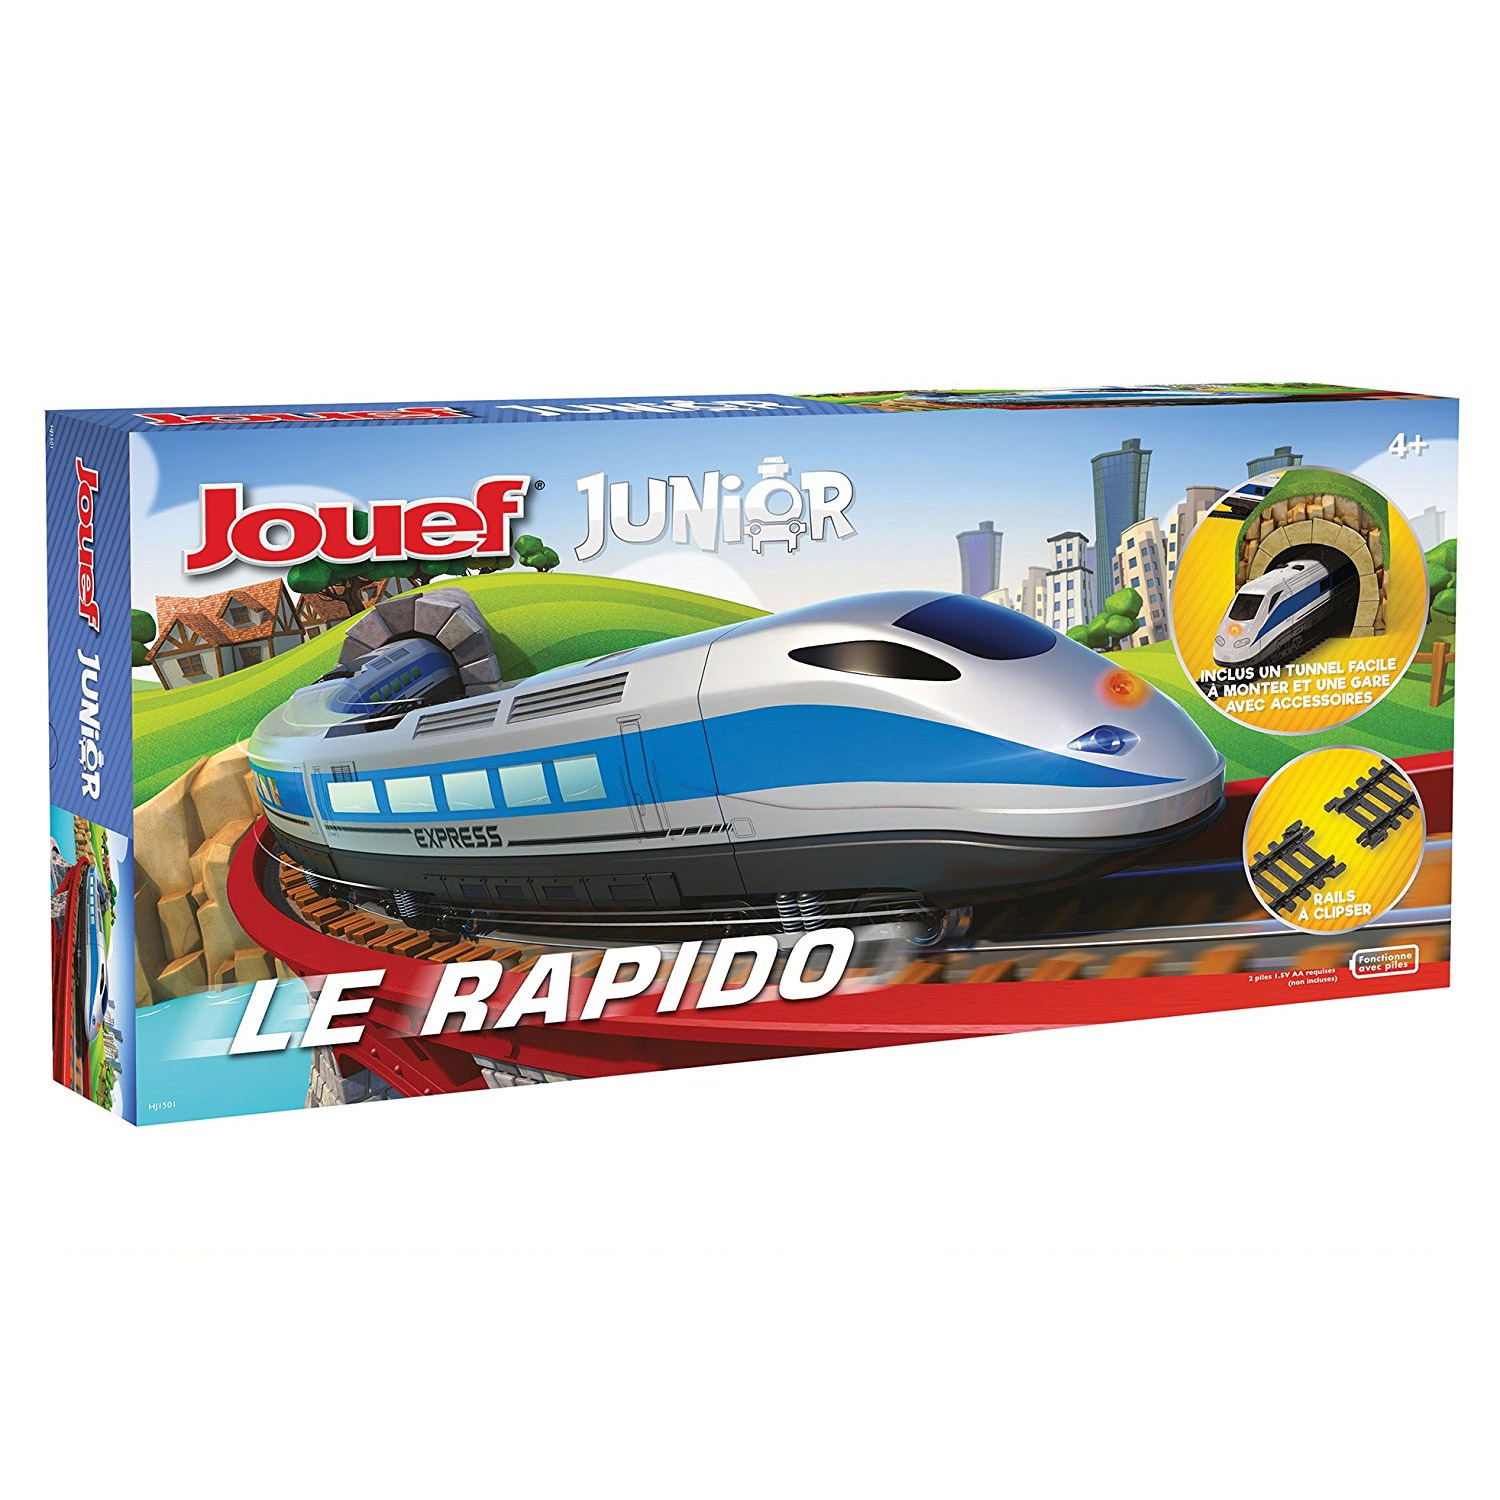 Train Electrique Jouef Junior Le Rapido - Jeux et jouets Jouef - Miniplanes